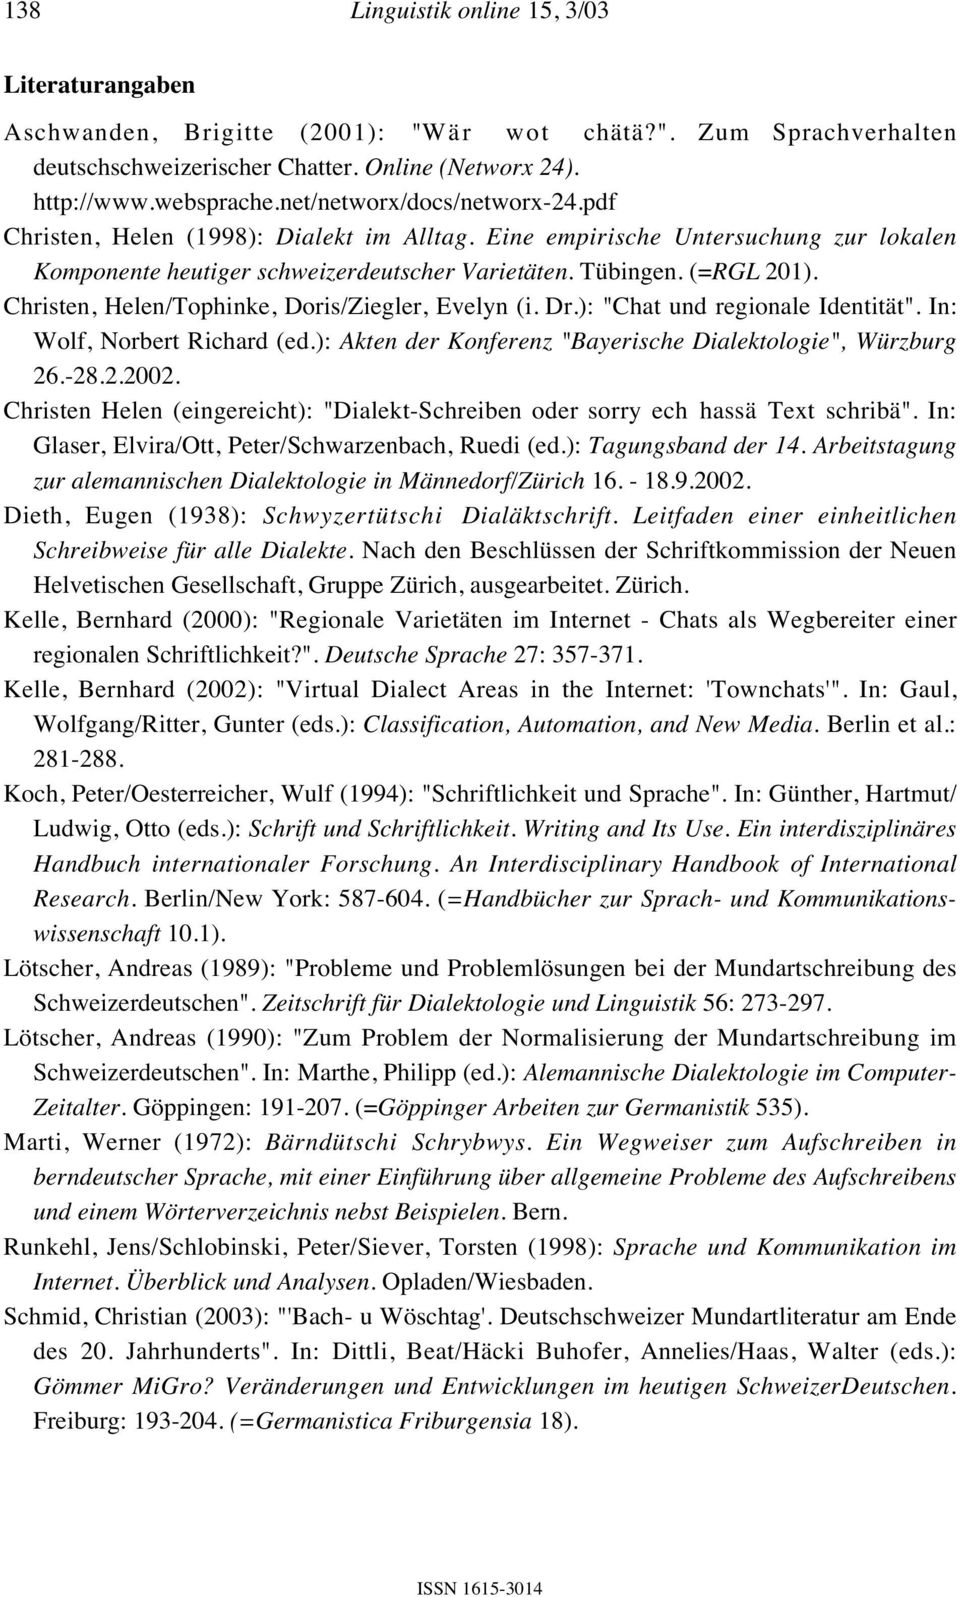 Christen, Helen/Tophinke, Doris/Ziegler, Evelyn (i. Dr.): "Chat und regionale Identität". In: Wolf, Norbert Richard (ed.): Akten der Konferenz "Bayerische Dialektologie", Würzburg 26.-28.2.2002.